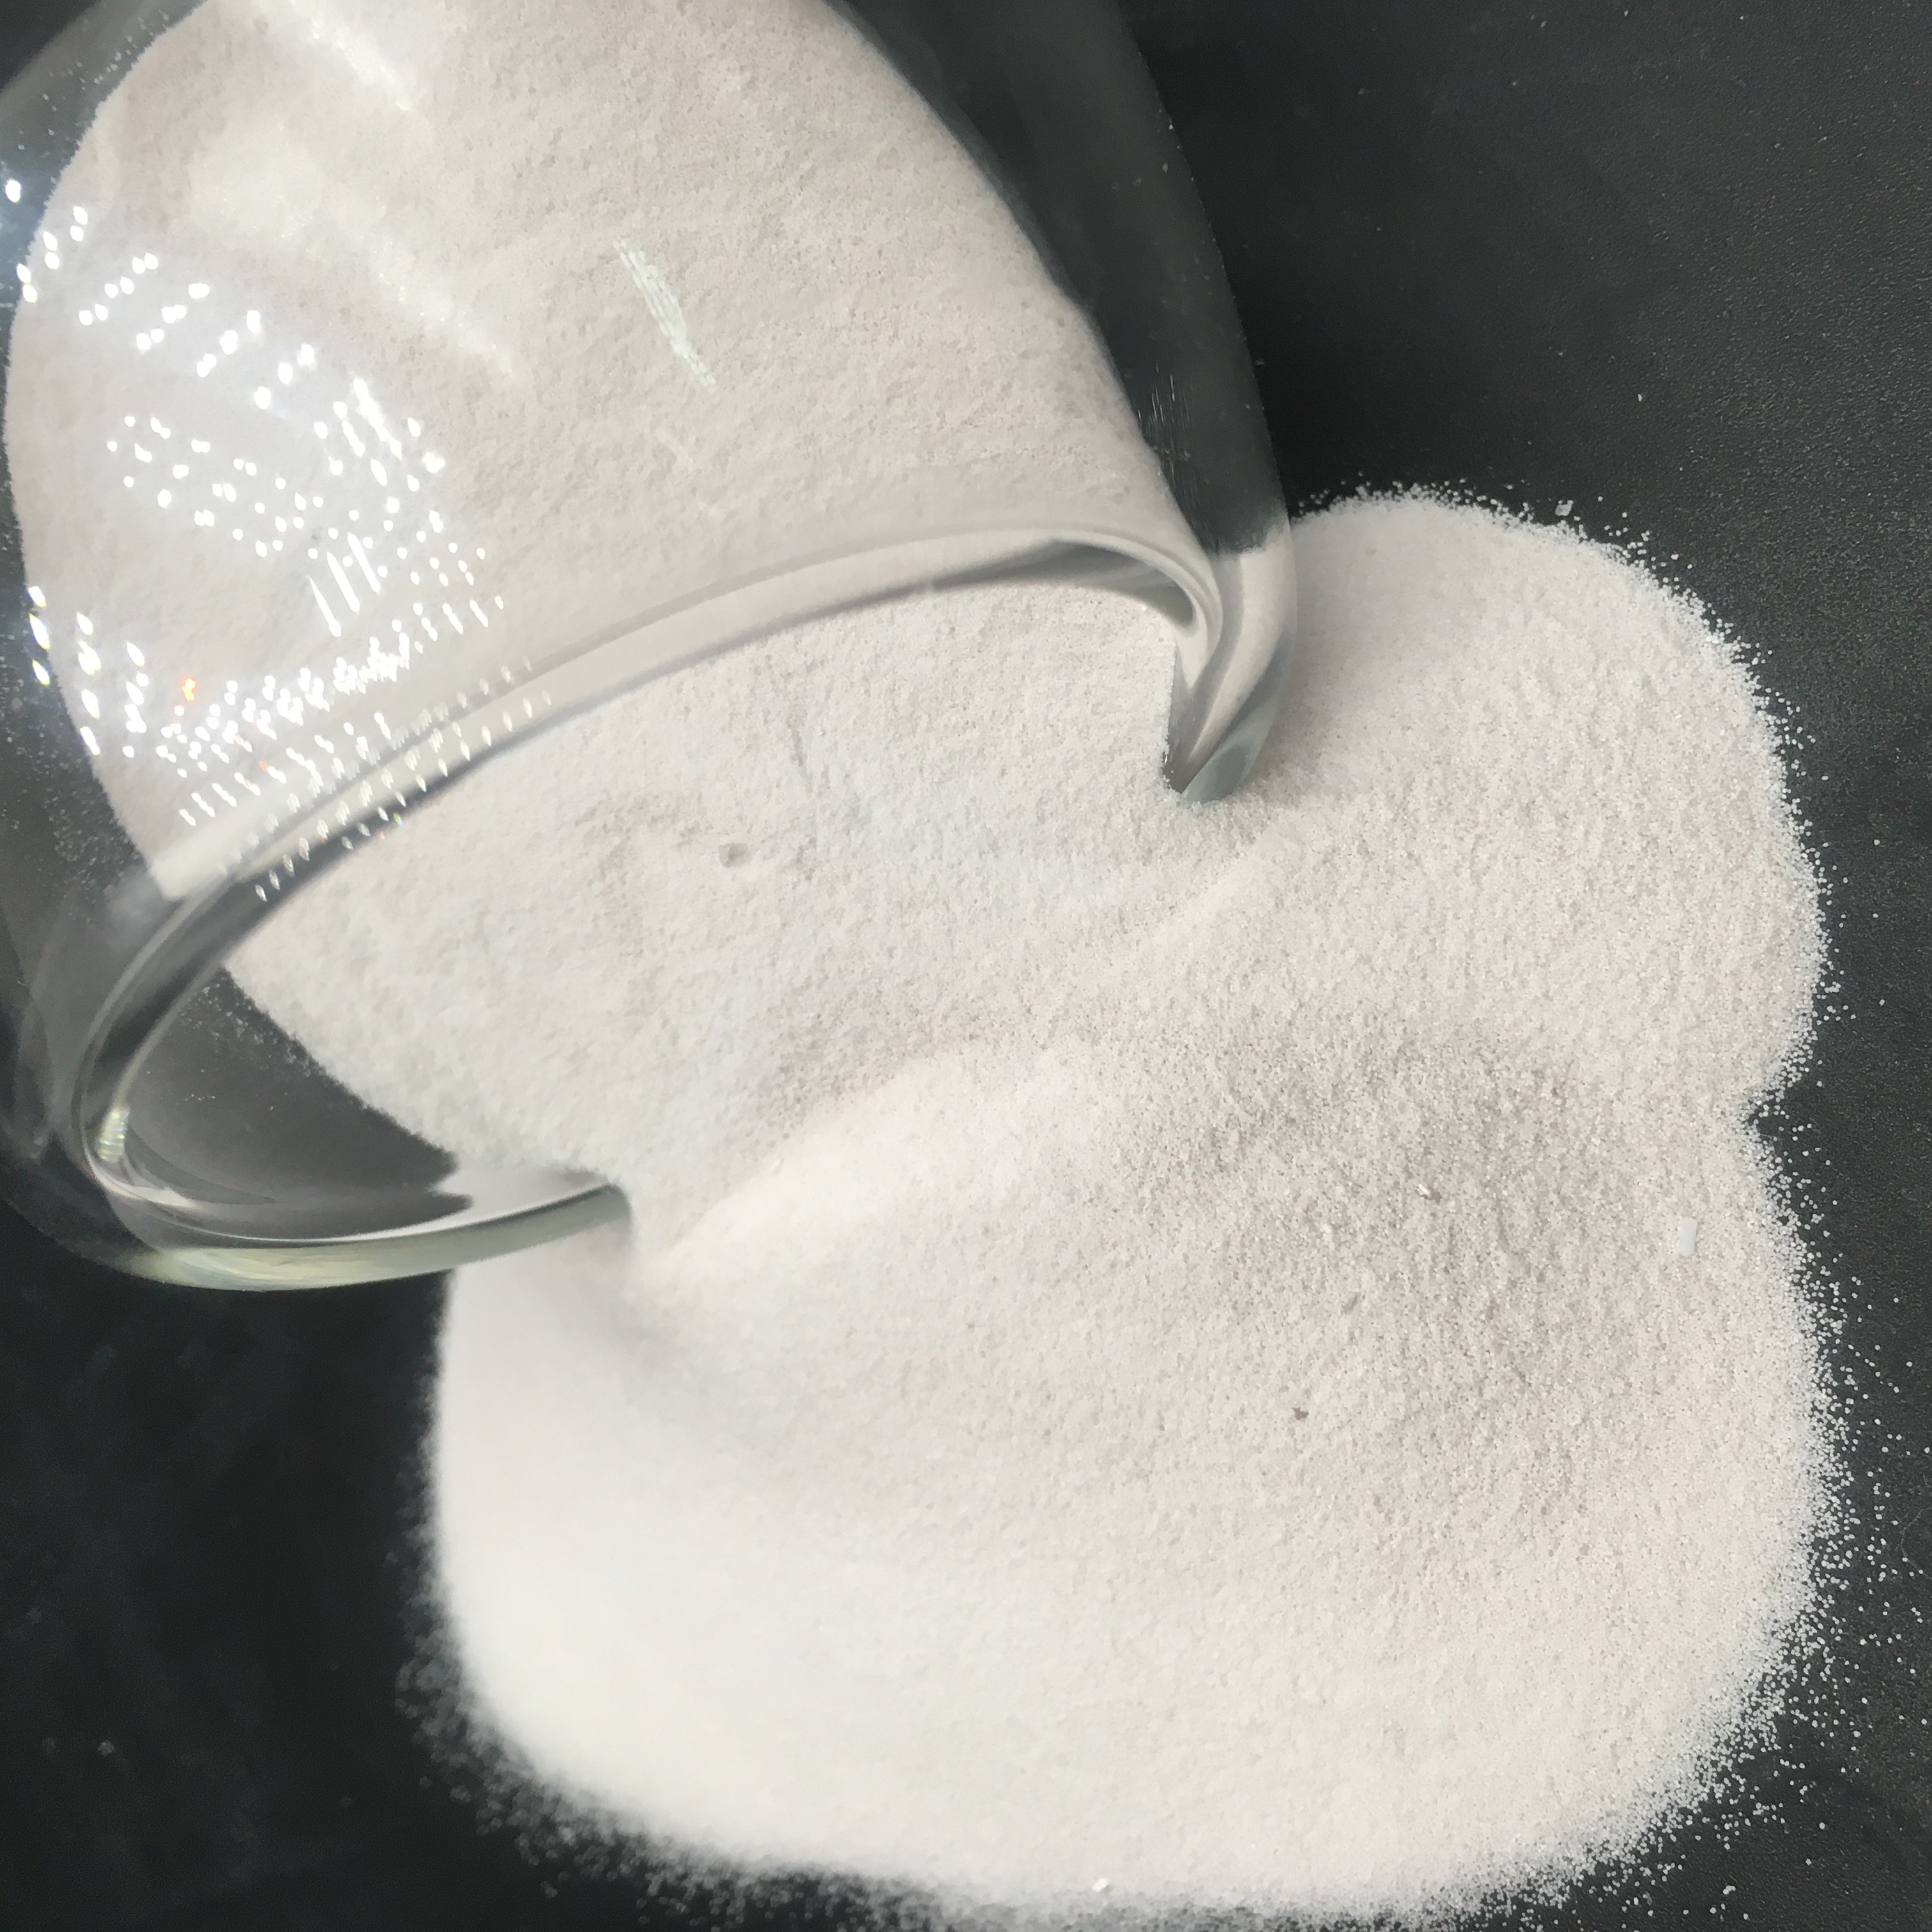 precio de sulfato de manganeso monohidratado mono granular mono polvo pentahidratado grado industrial